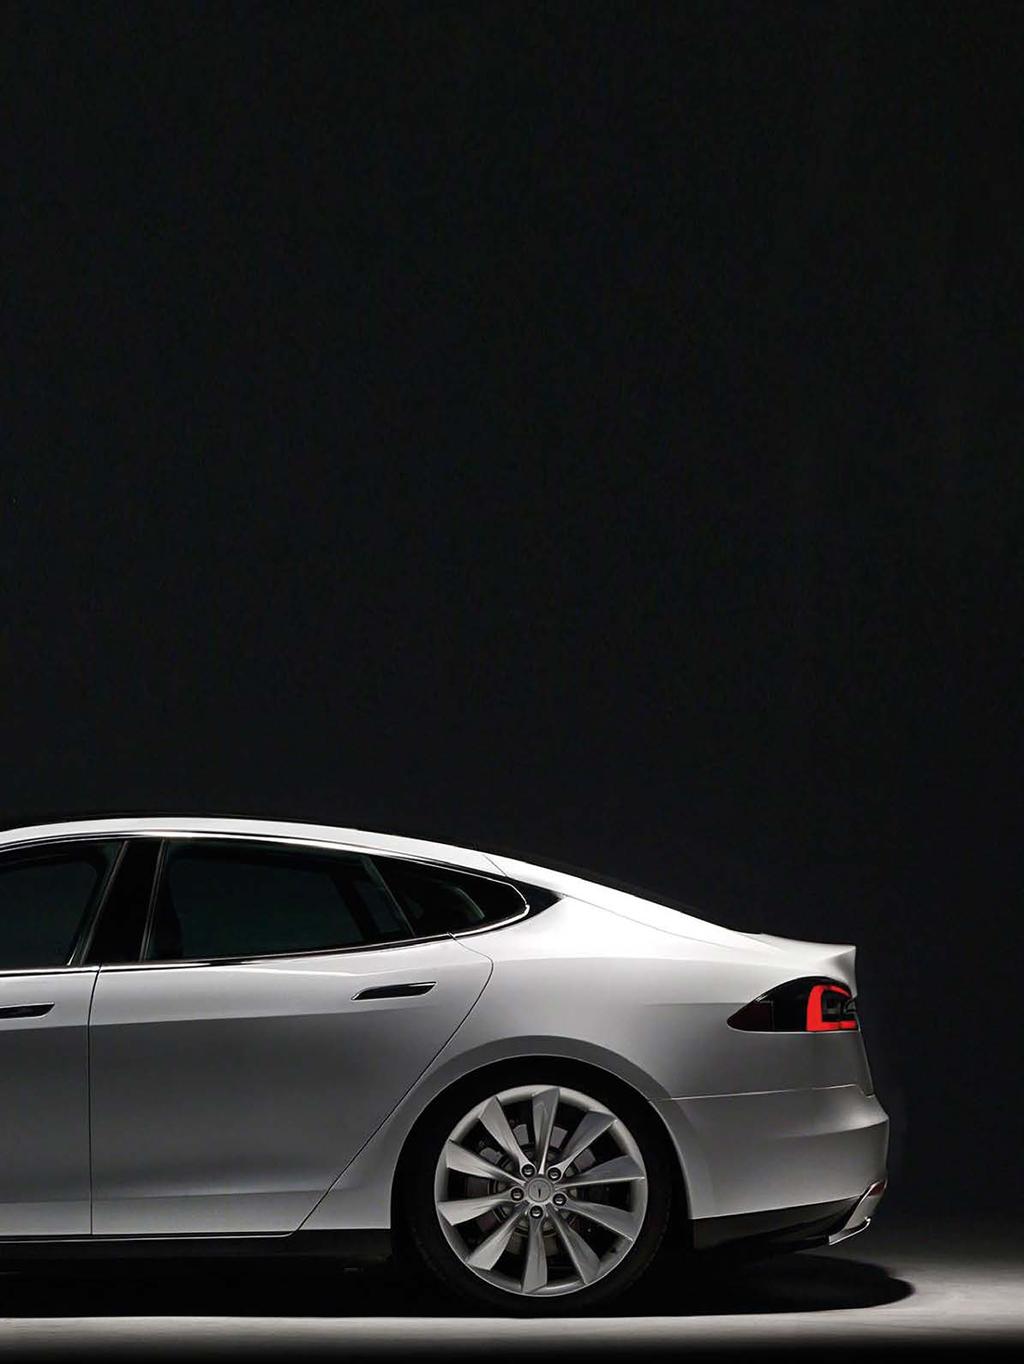 ab.fahren 47 350 und 165 Kilowatt. Tesla garantiert beim Model S acht Jahre oder über 200.000 Kilometer lang die Funktionstüchtigkeit von Batterie und Antriebseinheit.